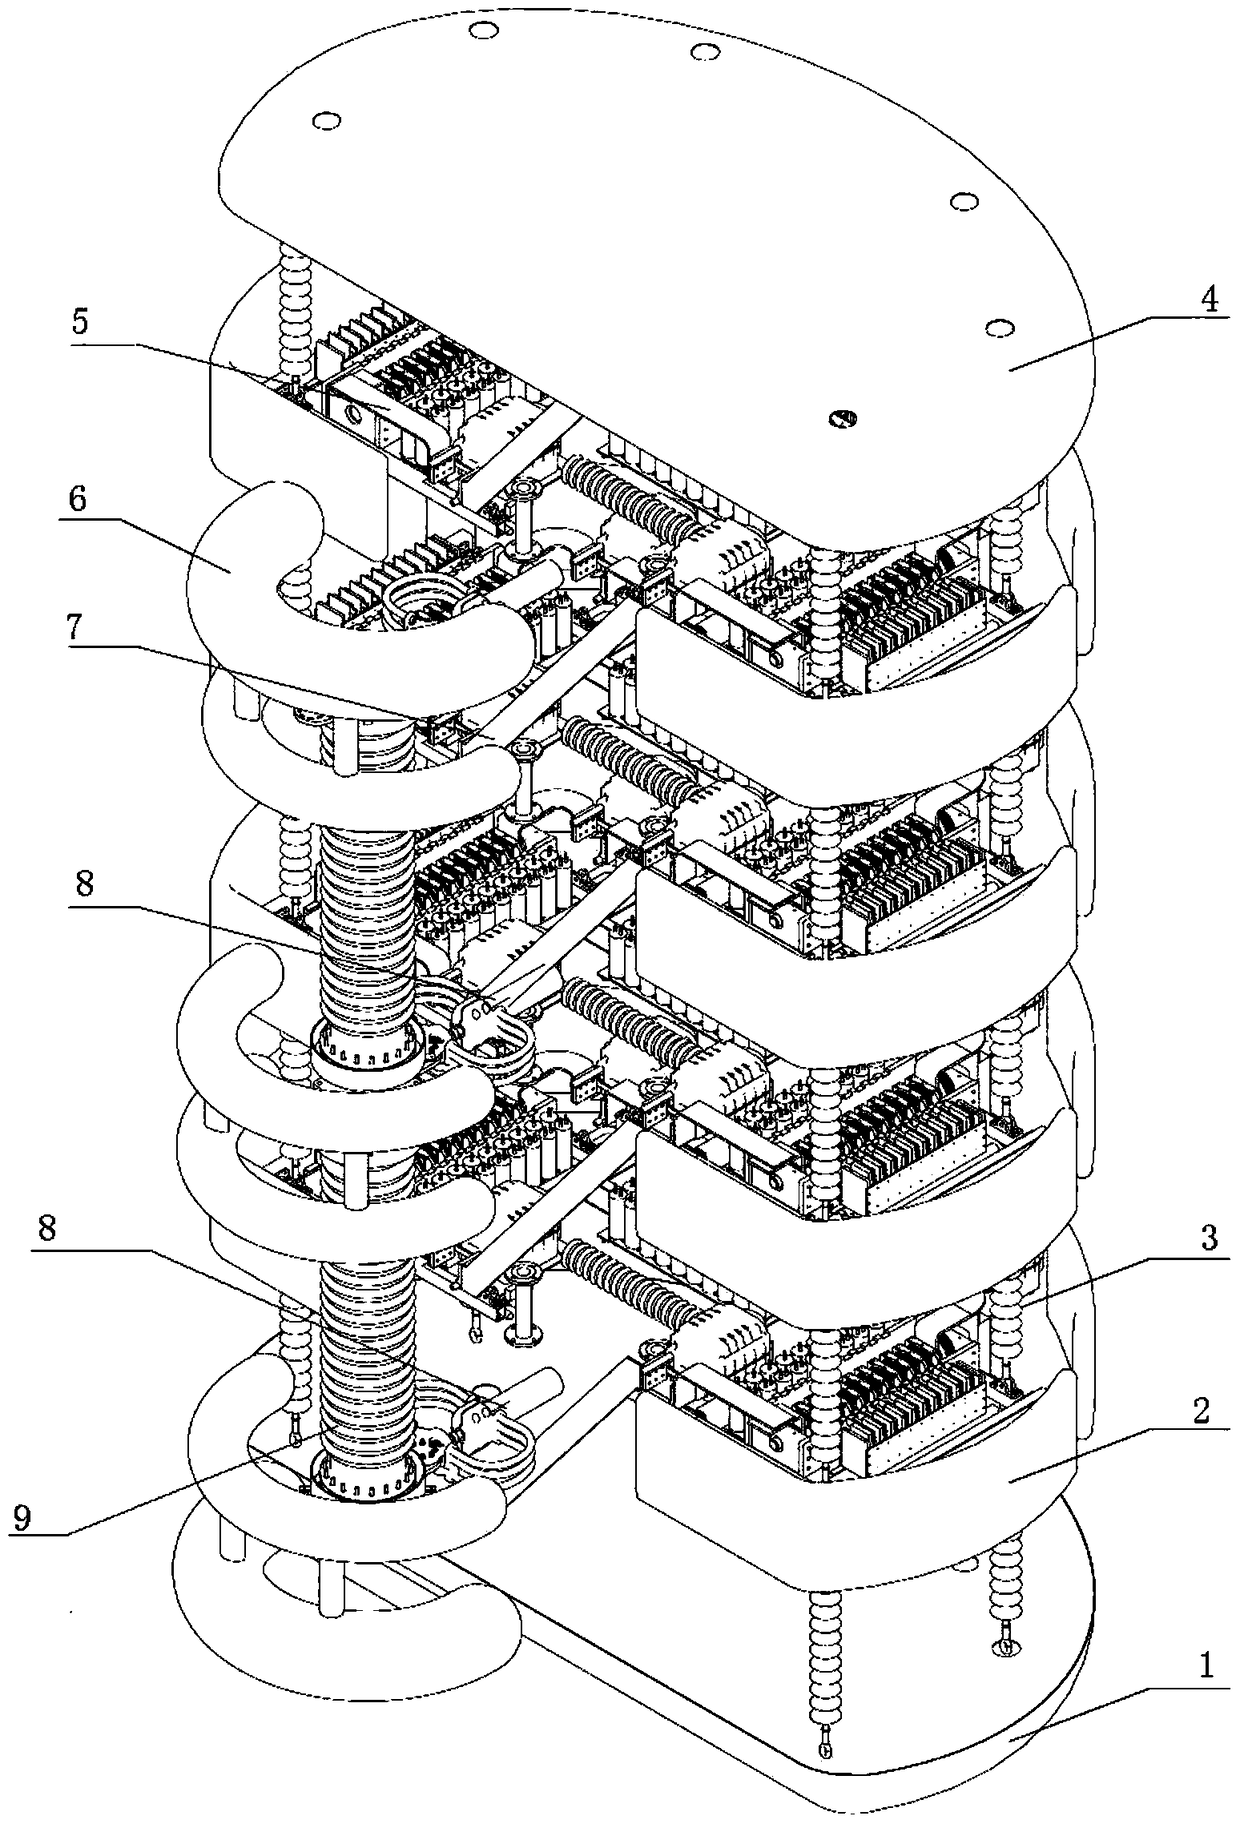 A thyristor converter valve tower for high-voltage direct current transmission